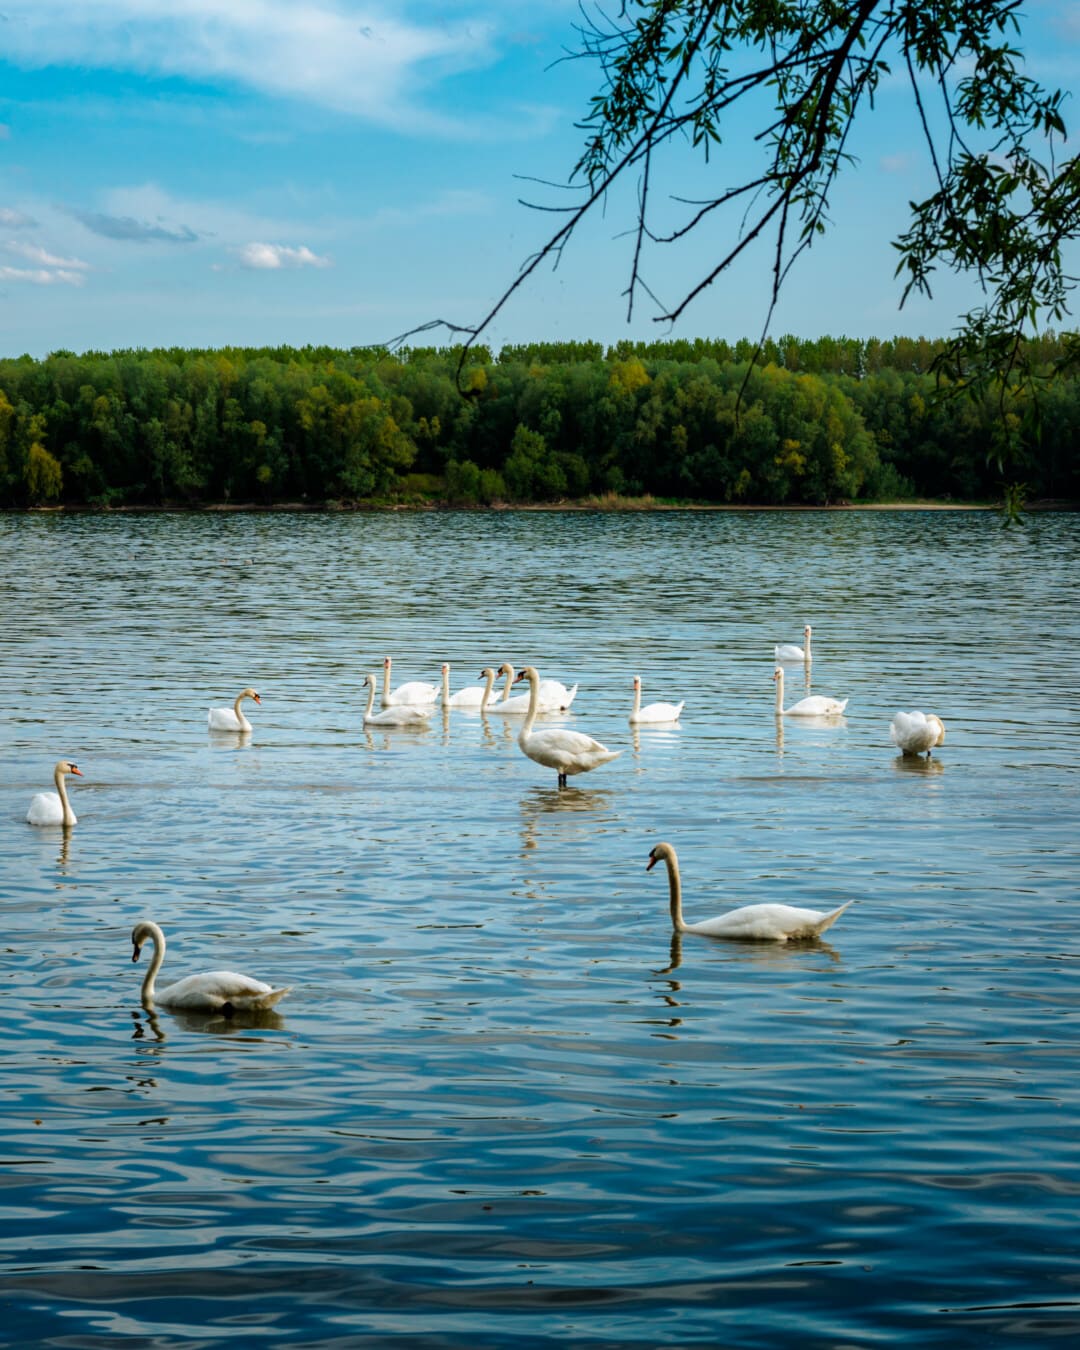 hattyú, Duna-folyó, folyó, nyáj, természetes élőhelye, vízimadarak, madár, vízi madár, tó, víz